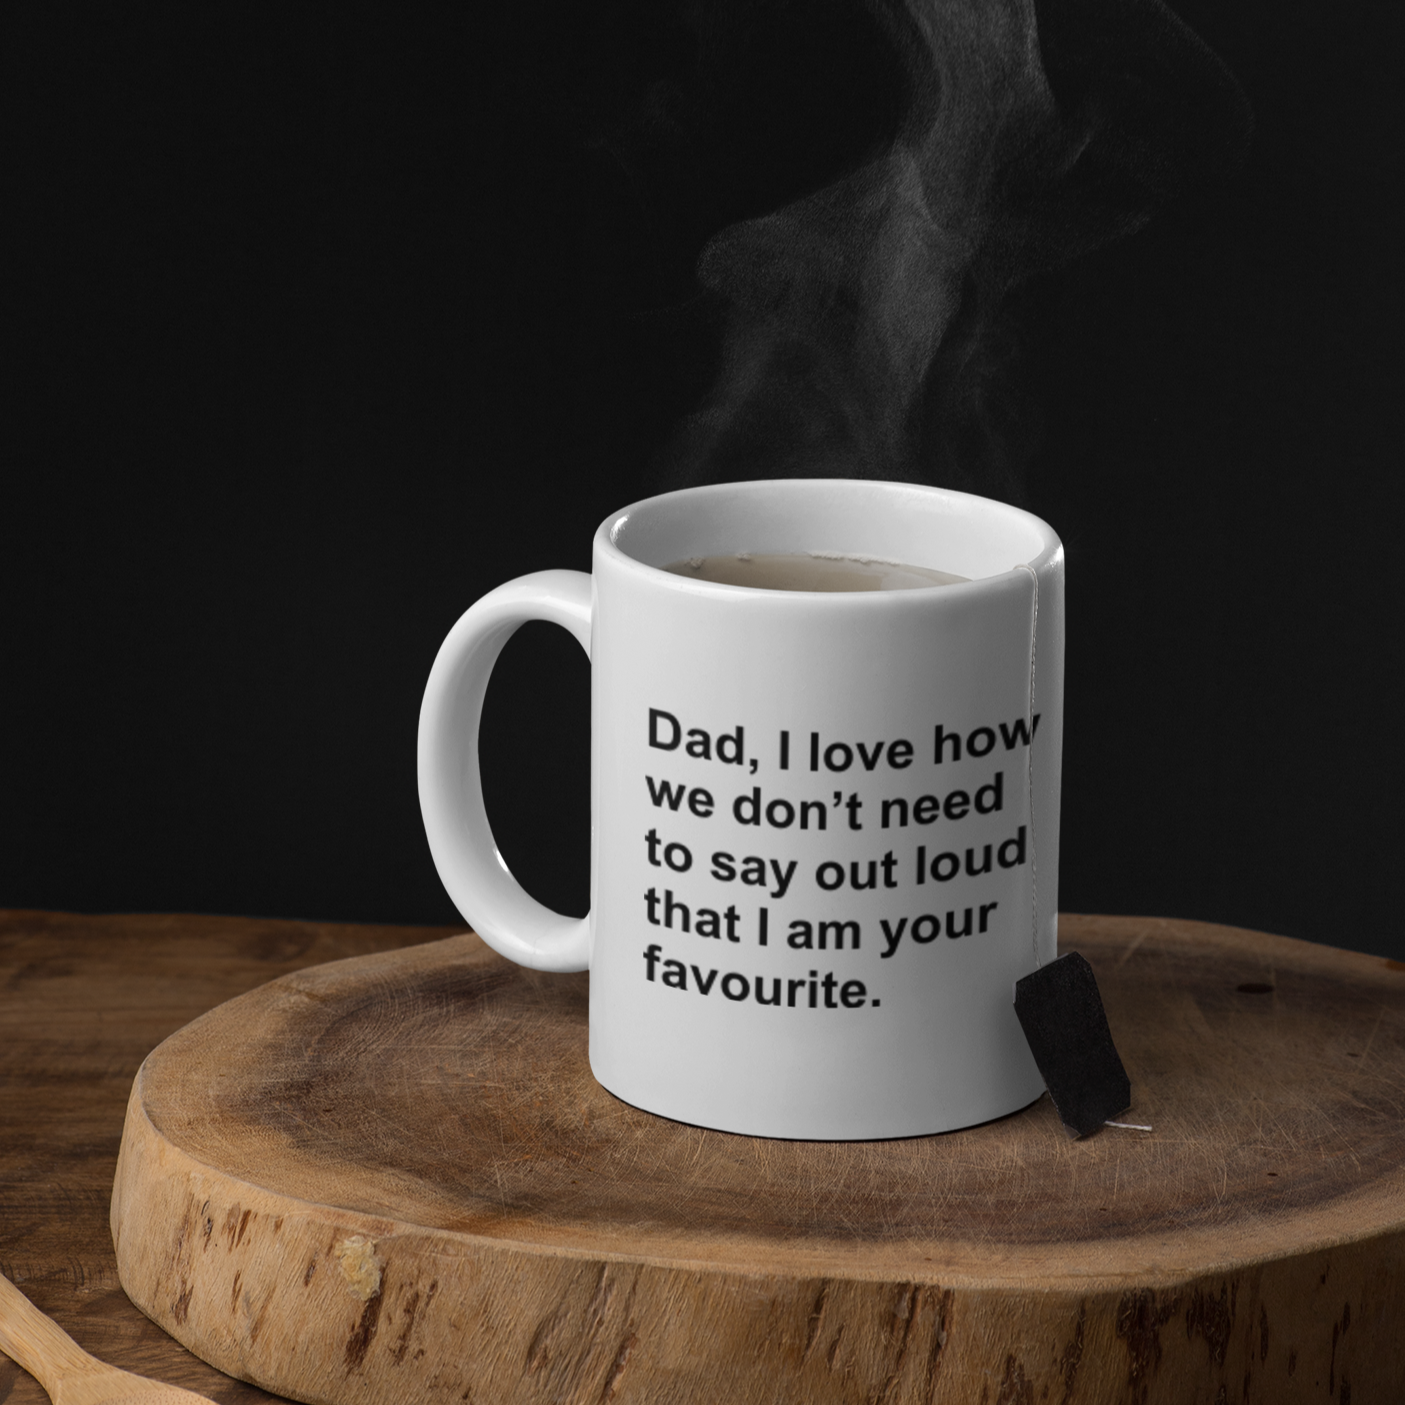 Dad, I love how we don't - mug